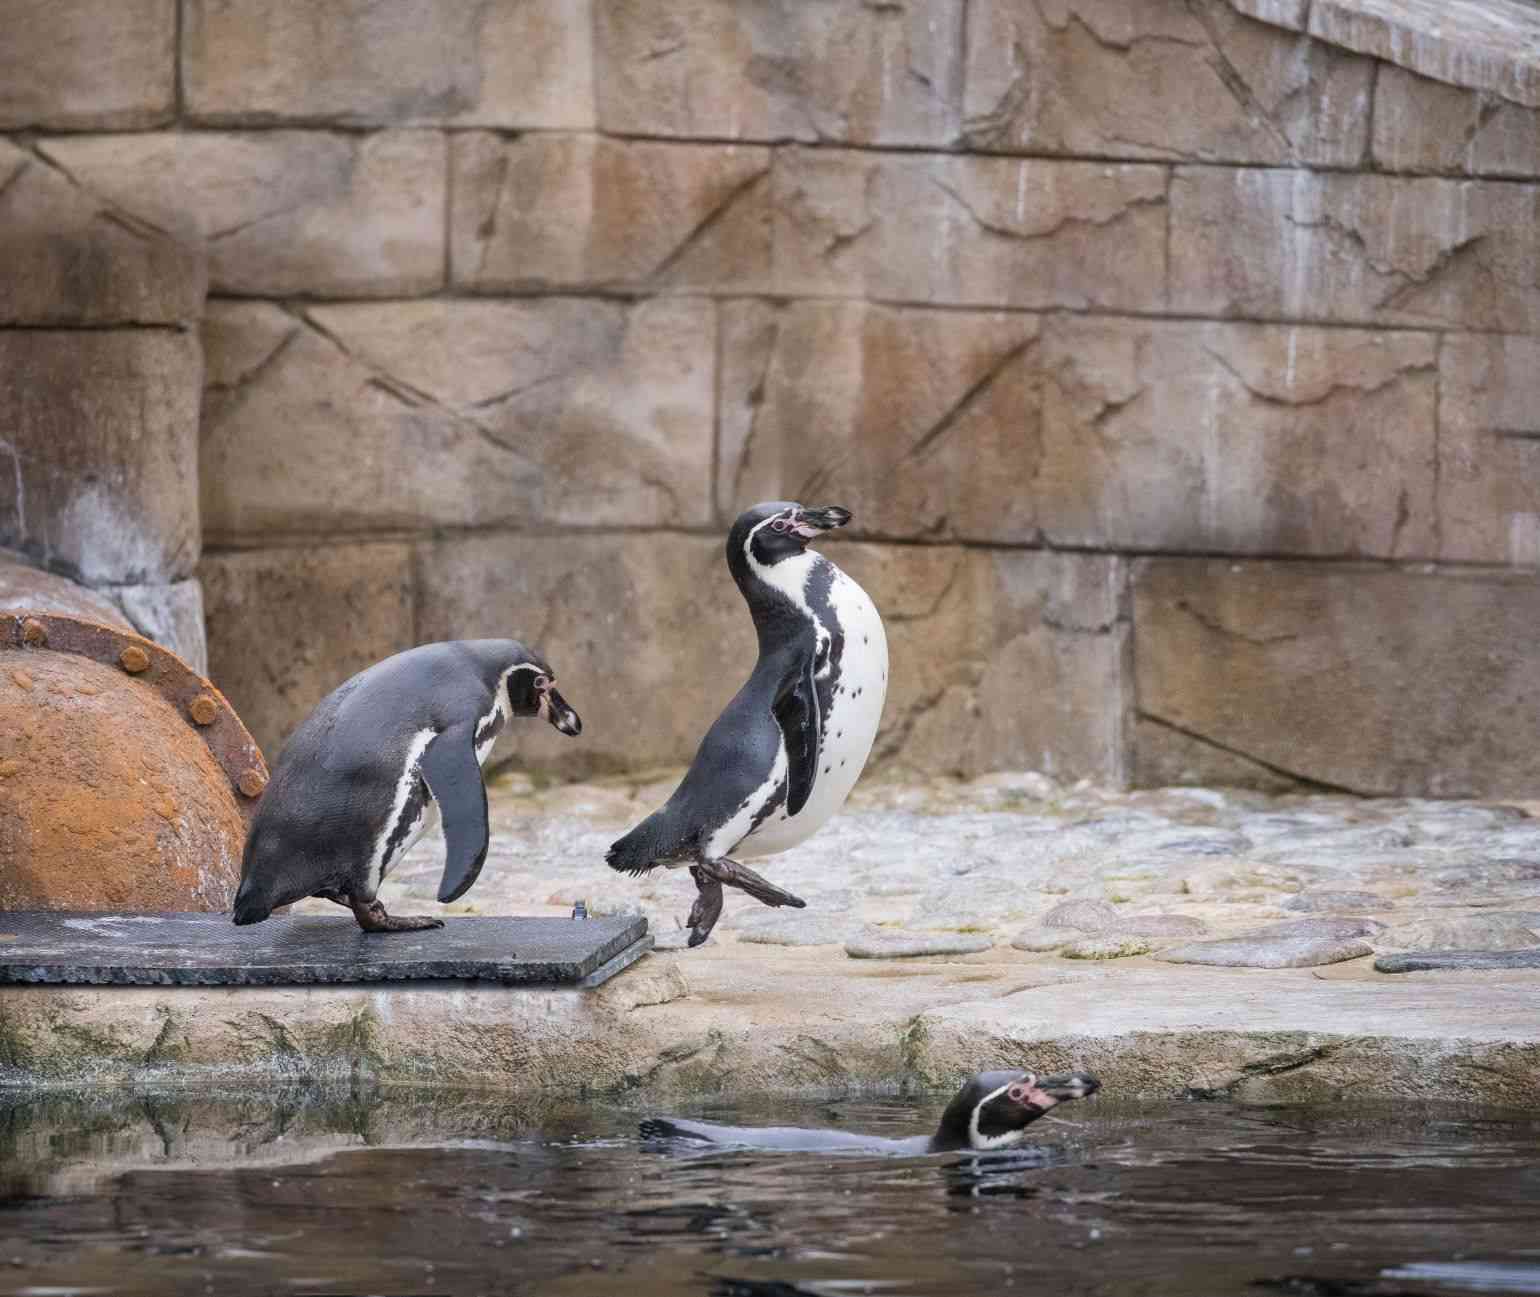 Penguin leaping into pool at Woburn Safari Park.jpg